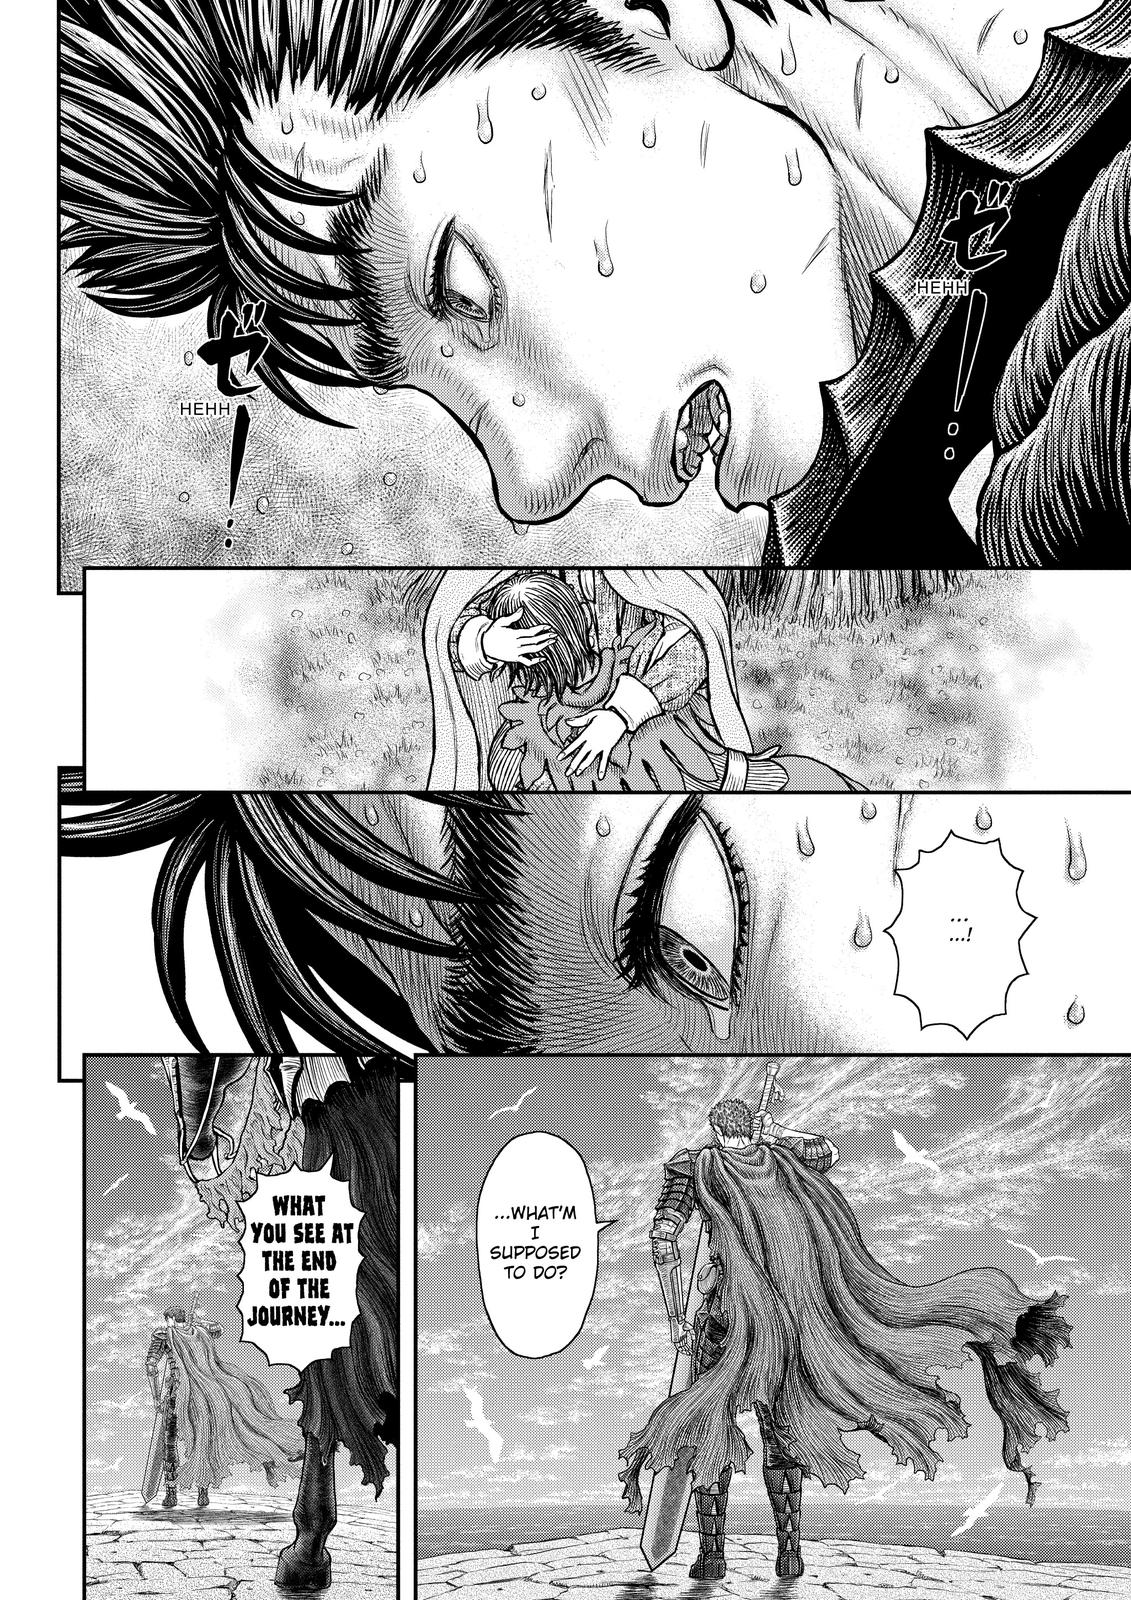 Berserk Manga Chapter 360 image 18